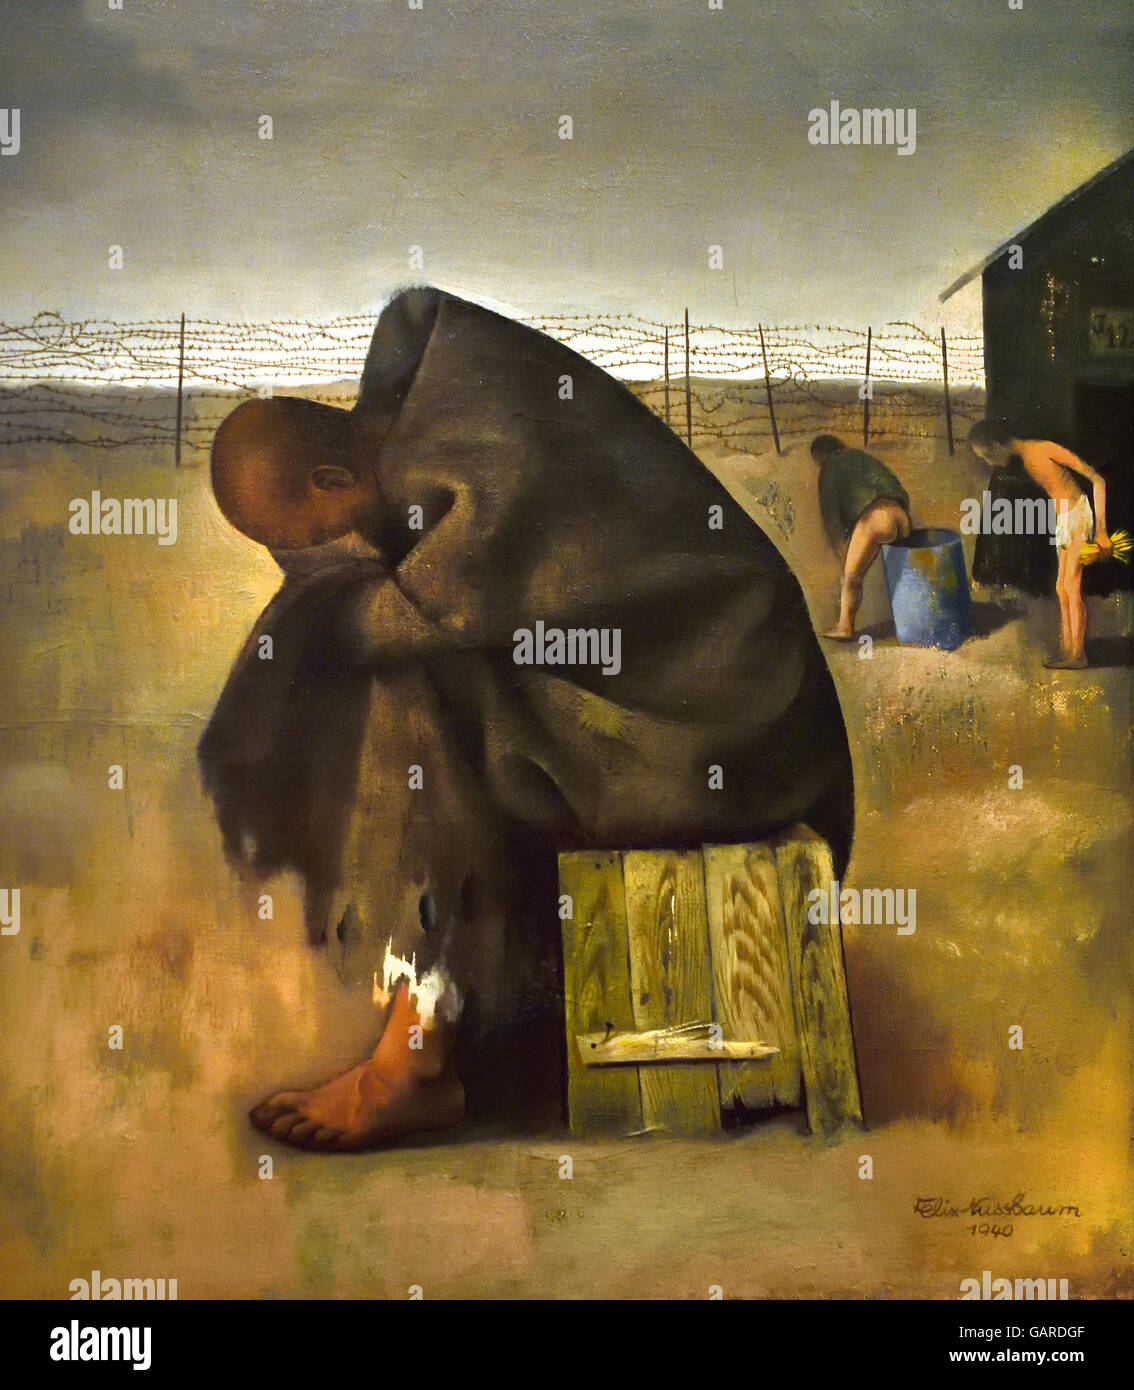 Gefangenen – 1940 Felix Nussbaum 1904 – 1944 Auschwitz, Nazi-Deutschland jüdische surrealistischen Maler deutscher Maler. Nussbaums Kunstwerk gibt einen seltenen Einblick in das Wesen eines einzelnen unter den Opfern des Holocaust. Stockfoto